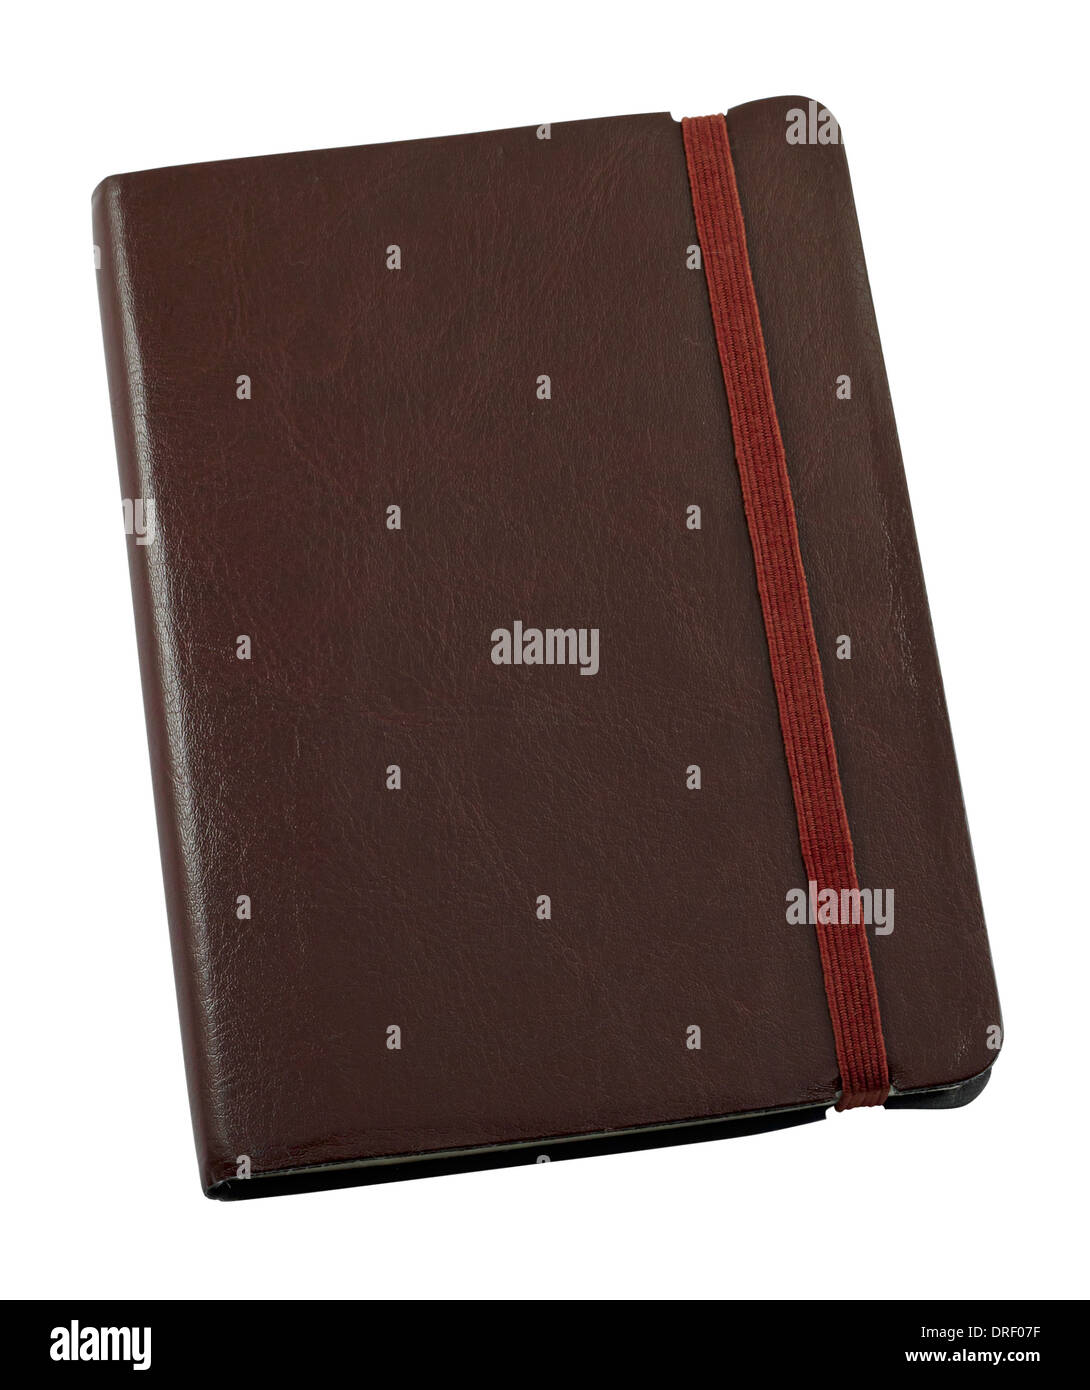 Tamaño de bolsillo diario personal dependiente de cuero para mantener un registro escrito de mano de los recuerdos Foto de stock